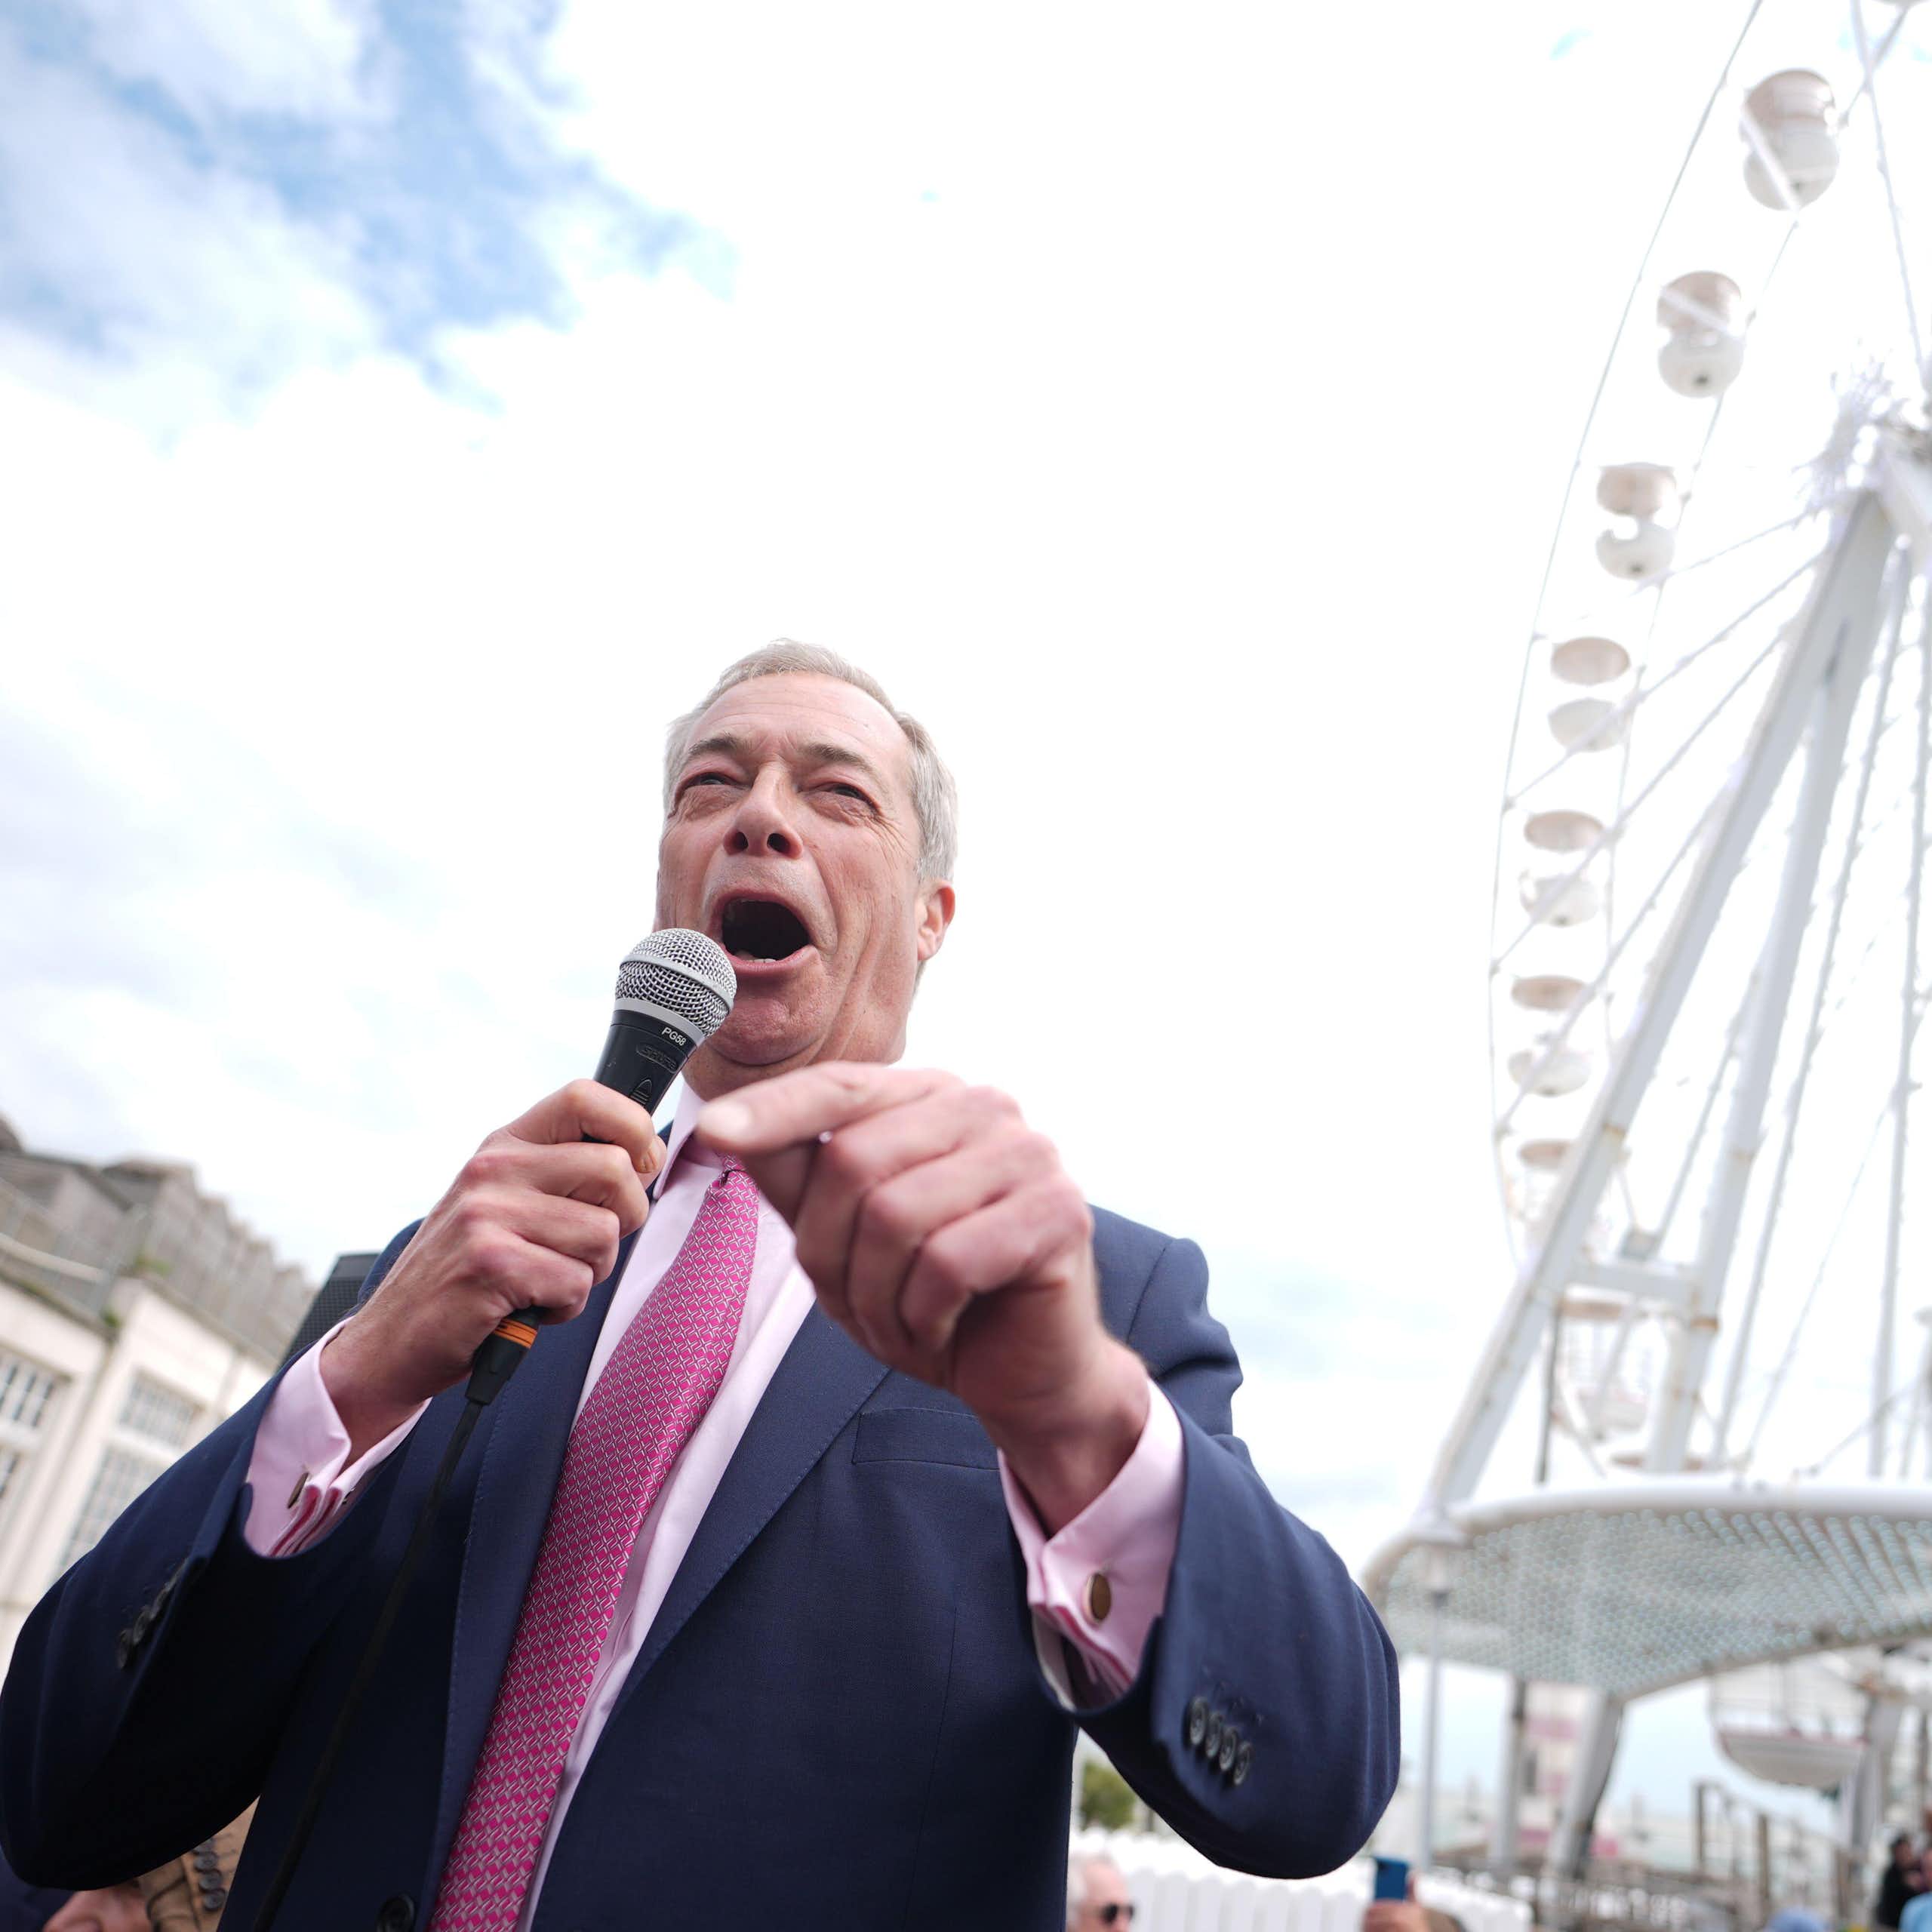 Nigel Farage in front of a ferris wheel in Clacton.